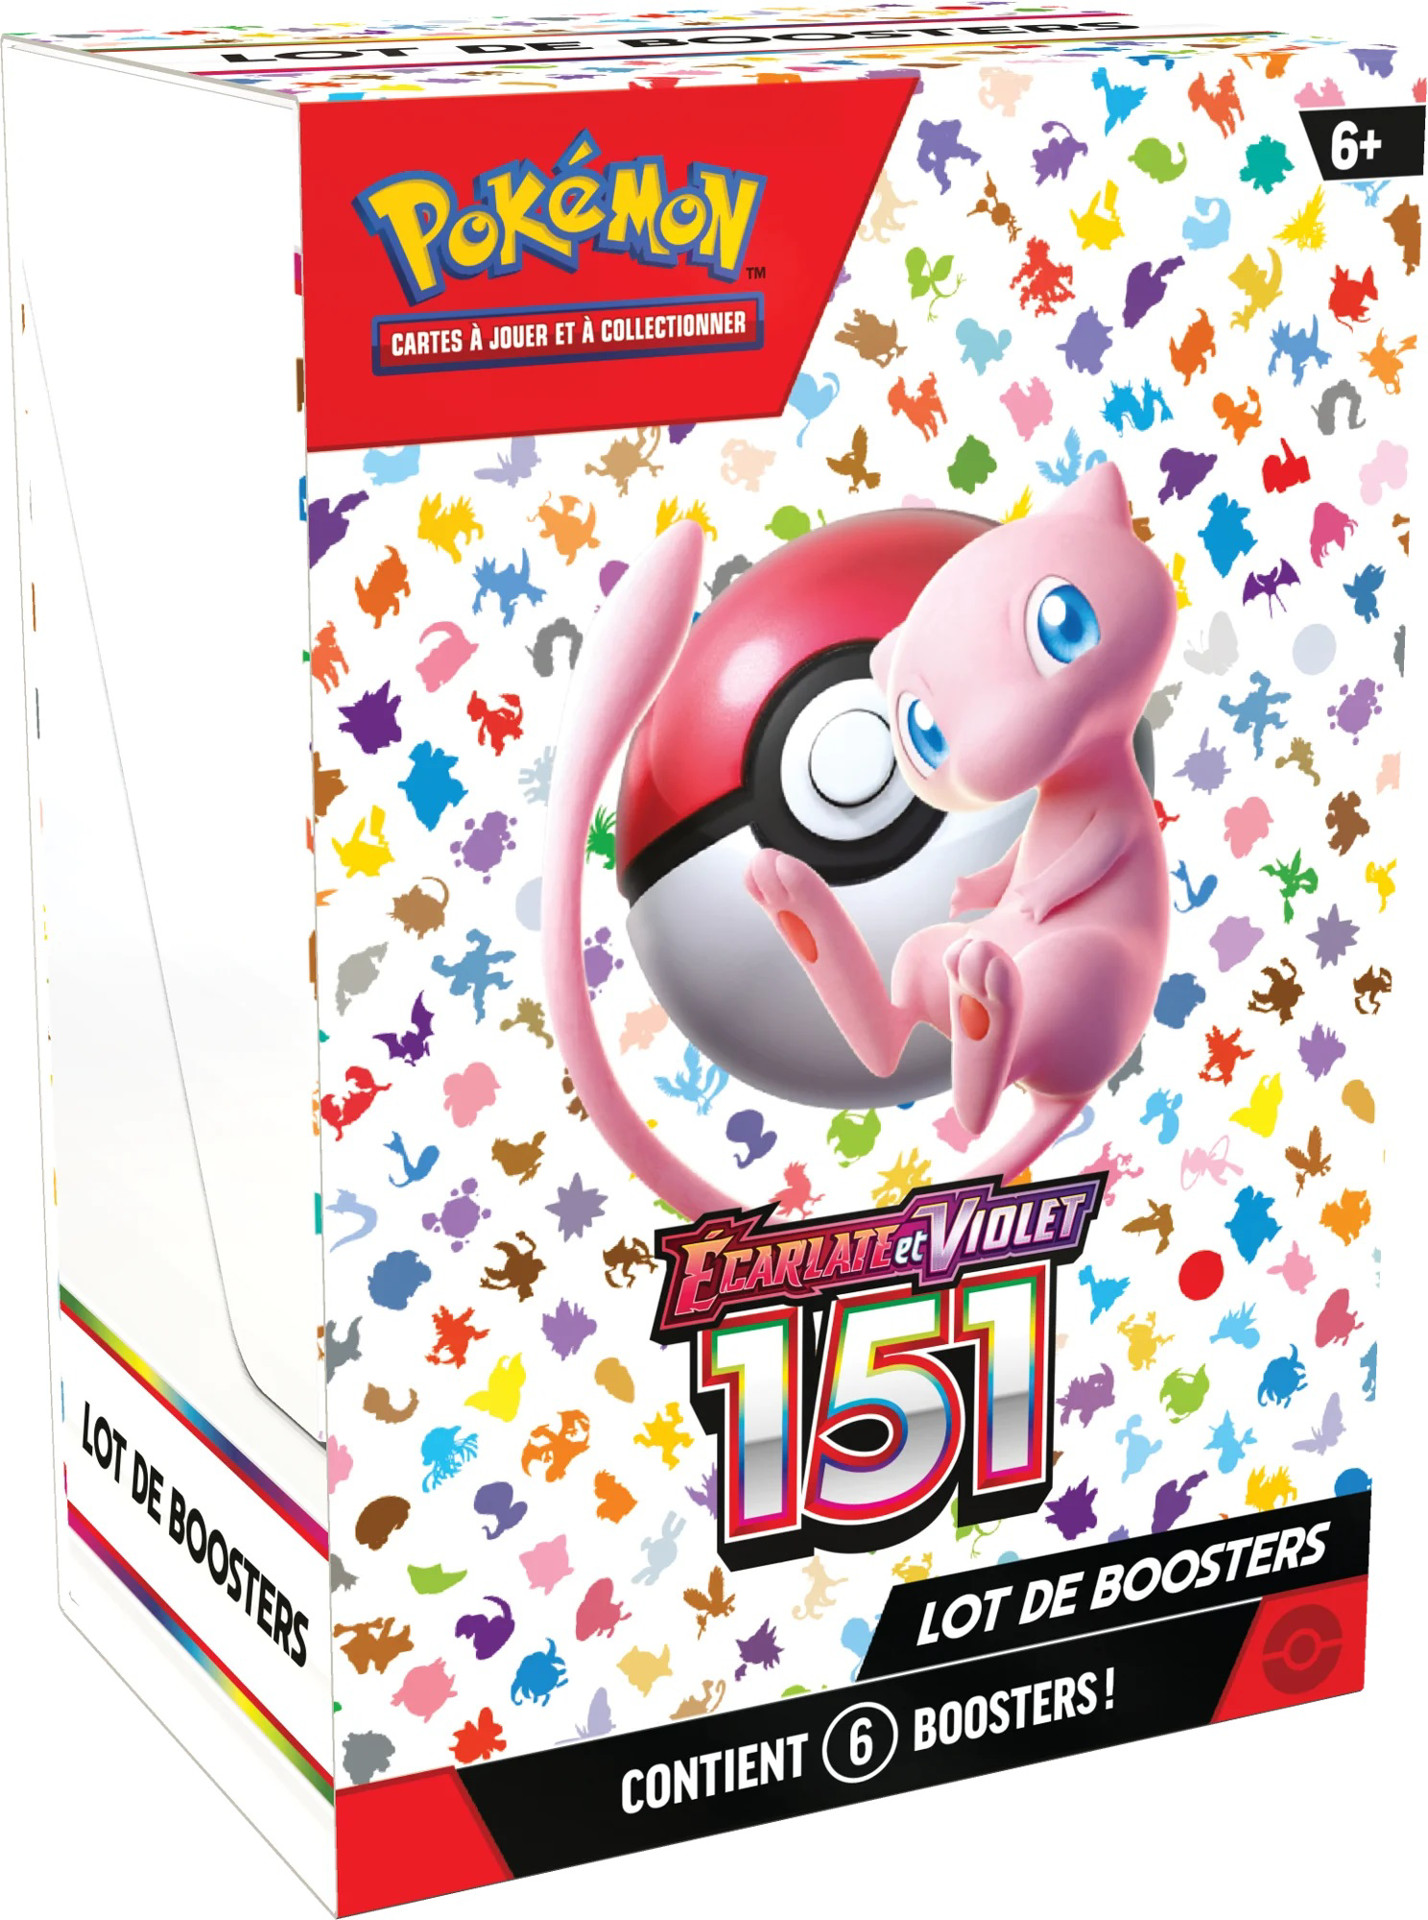 Pokémon EV 3.5 Ecarlate & Violet 151: Dresseur D'élite